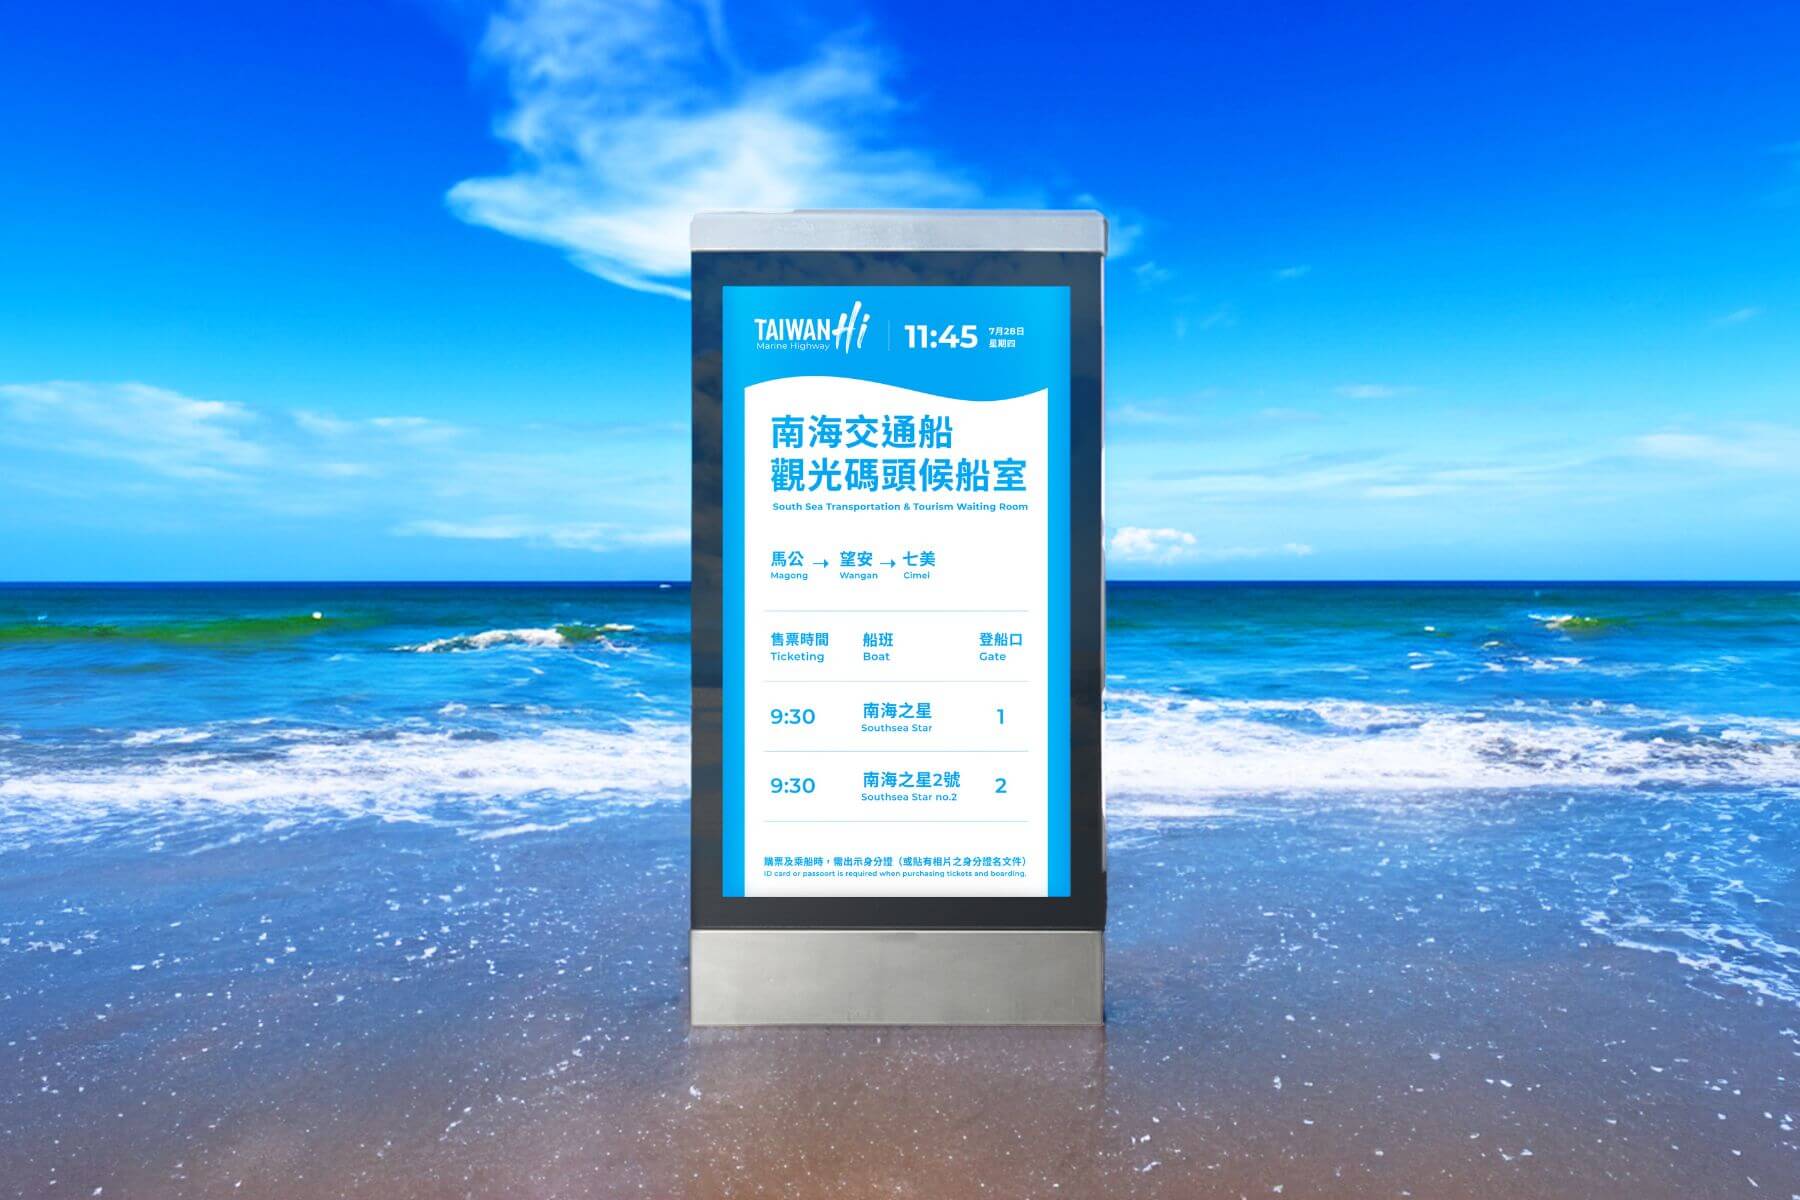 向海洋說聲嗨！航港局「Taiwan Hi 」新品牌亮相！邀你體驗藍色公路之美